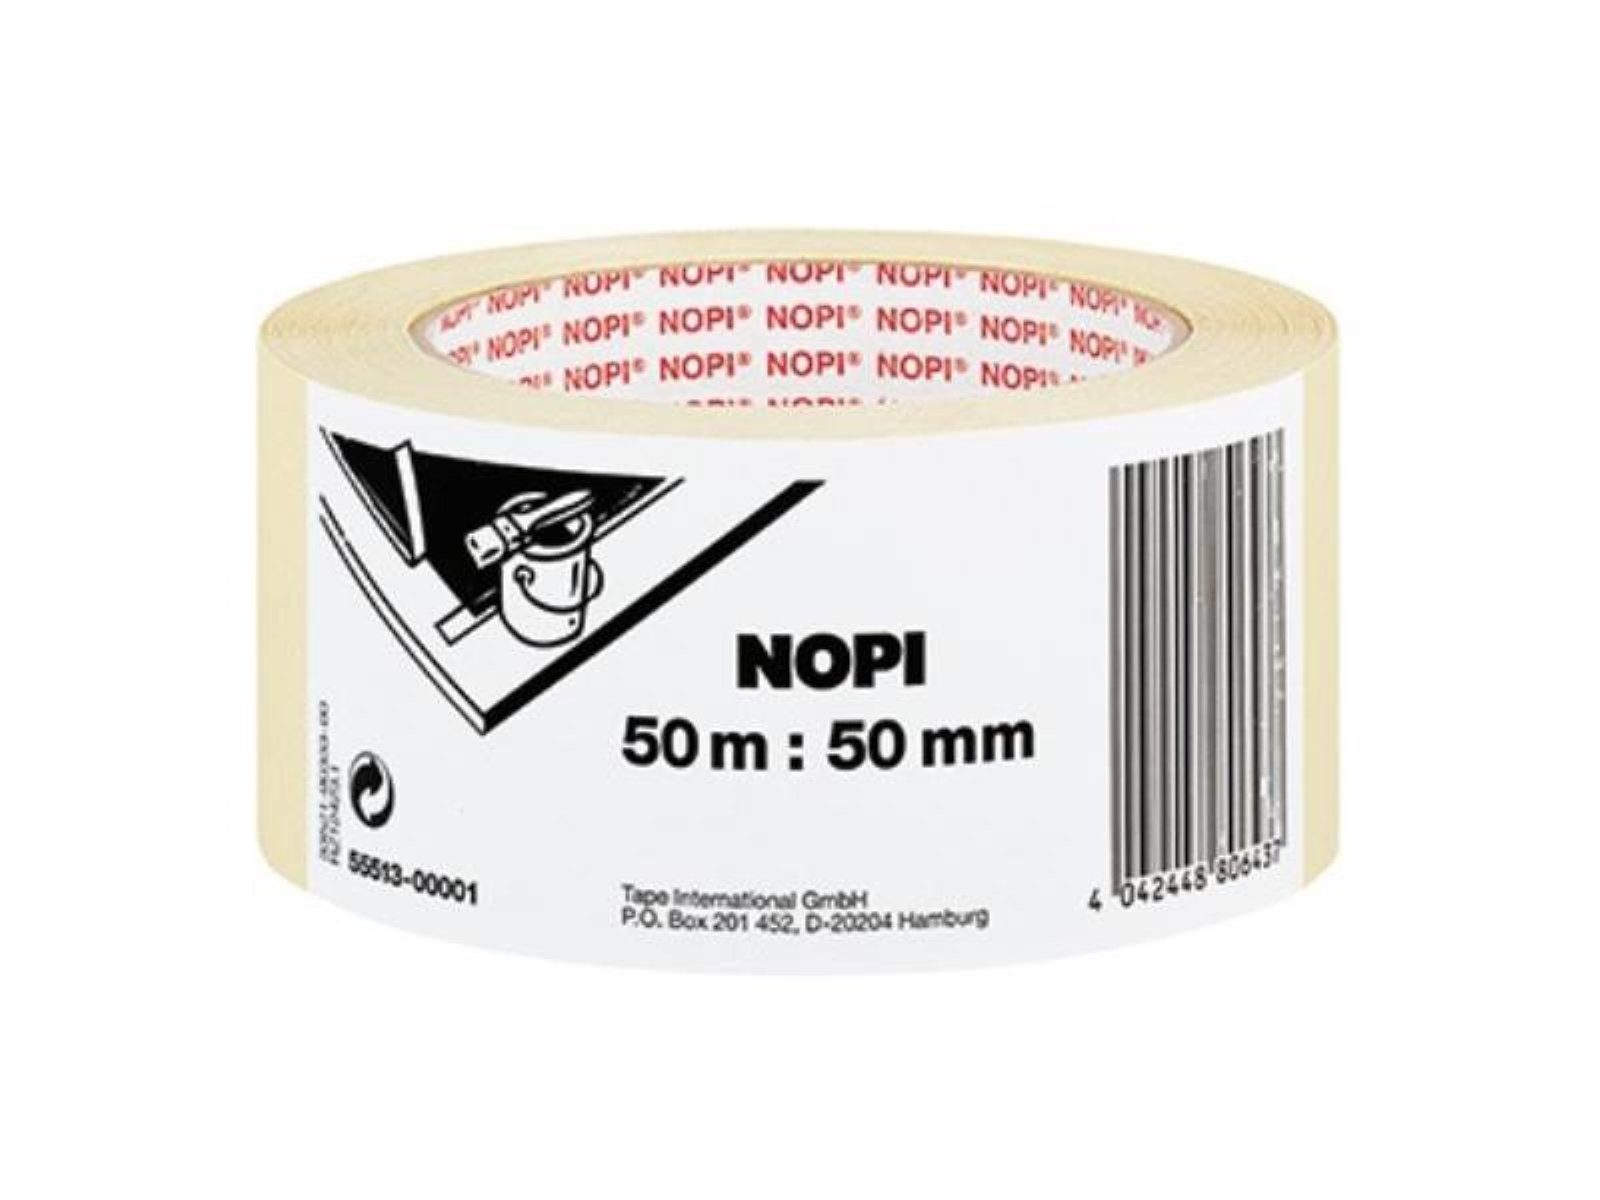 NOPI Klebeband NOPI 55513-00001 NOPI® Kreppband Maler-Krepp Innenbereich 50 mm x 50